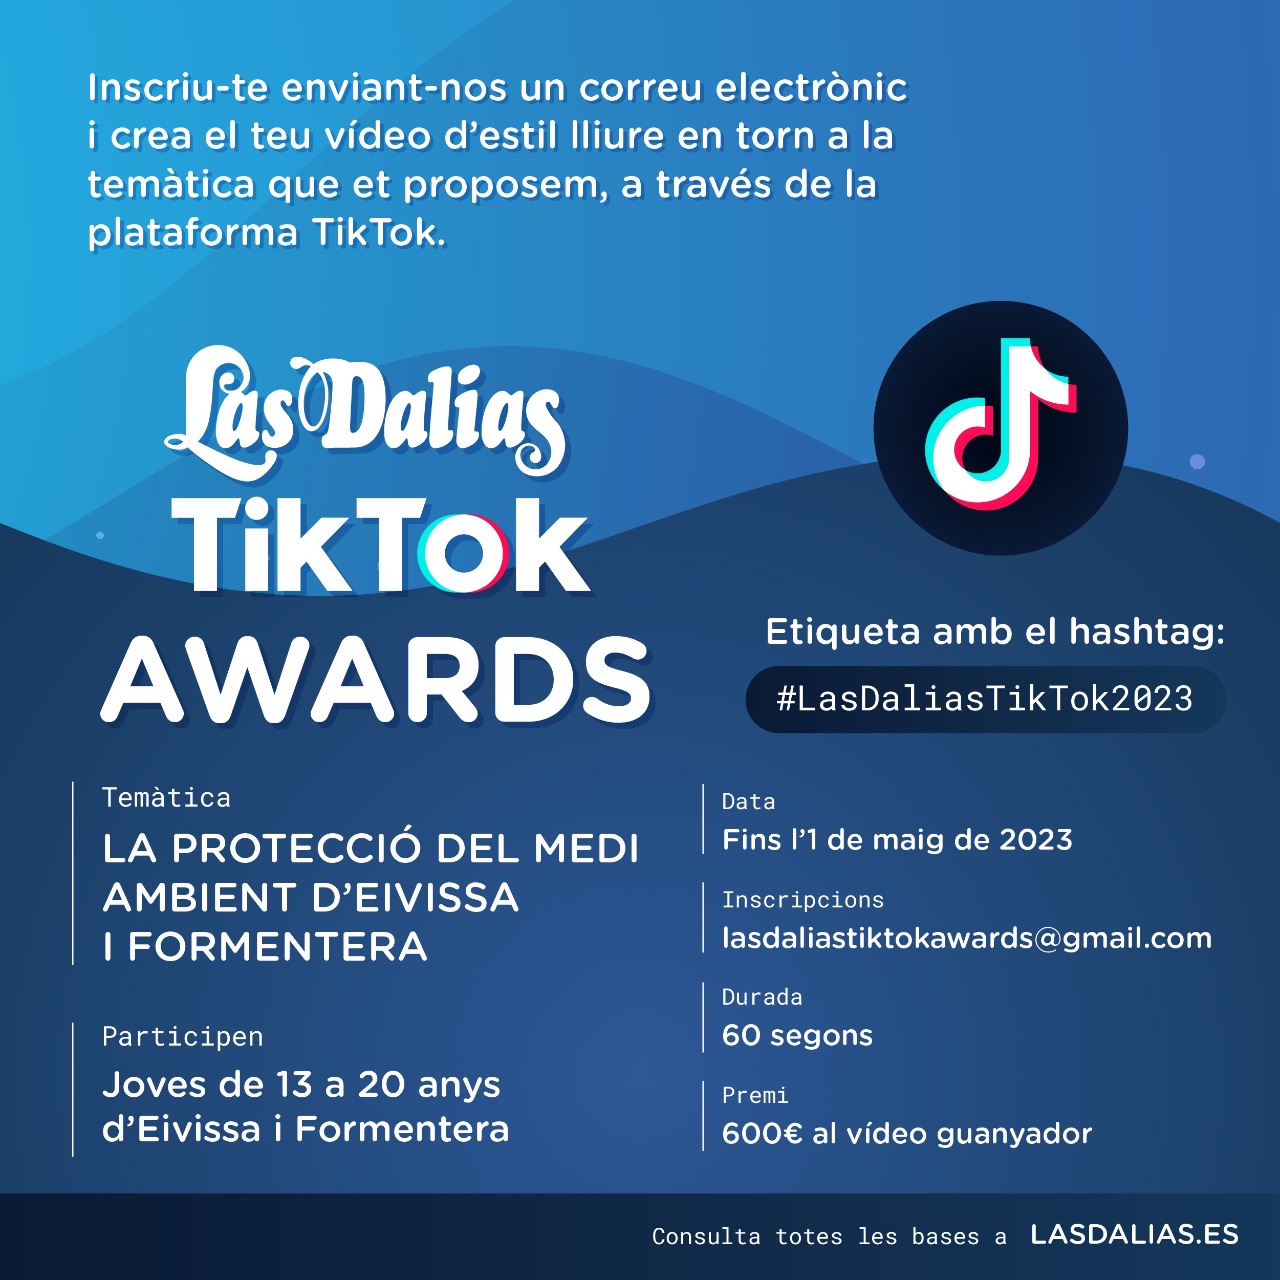 Las Dalias TikTok Awards 2023